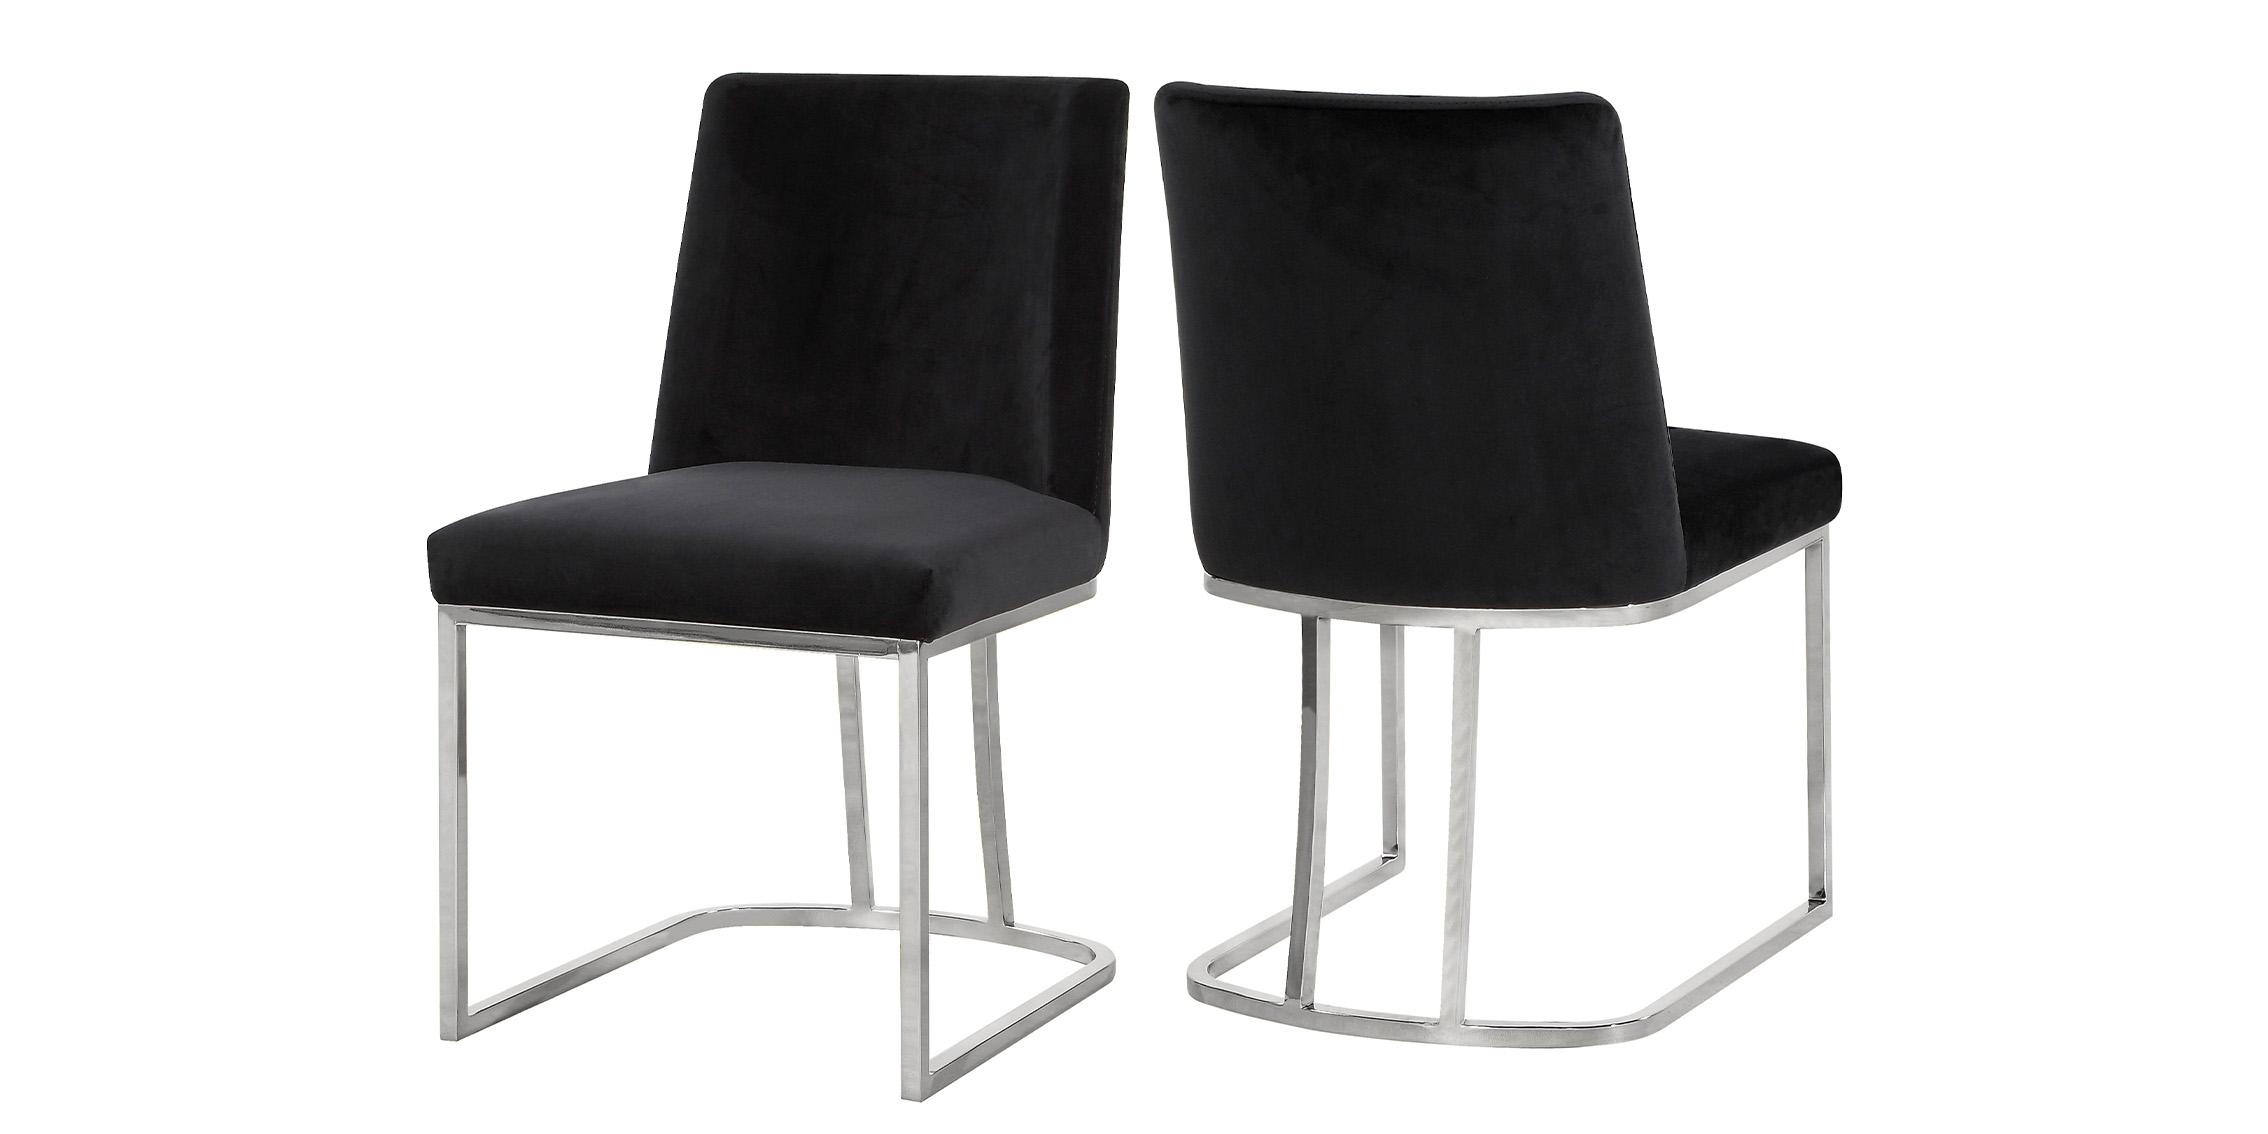 Contemporary, Modern Dining Chair Set HEIDI 728Black 728Black-C-Set-2 in Chrome, Black Velvet